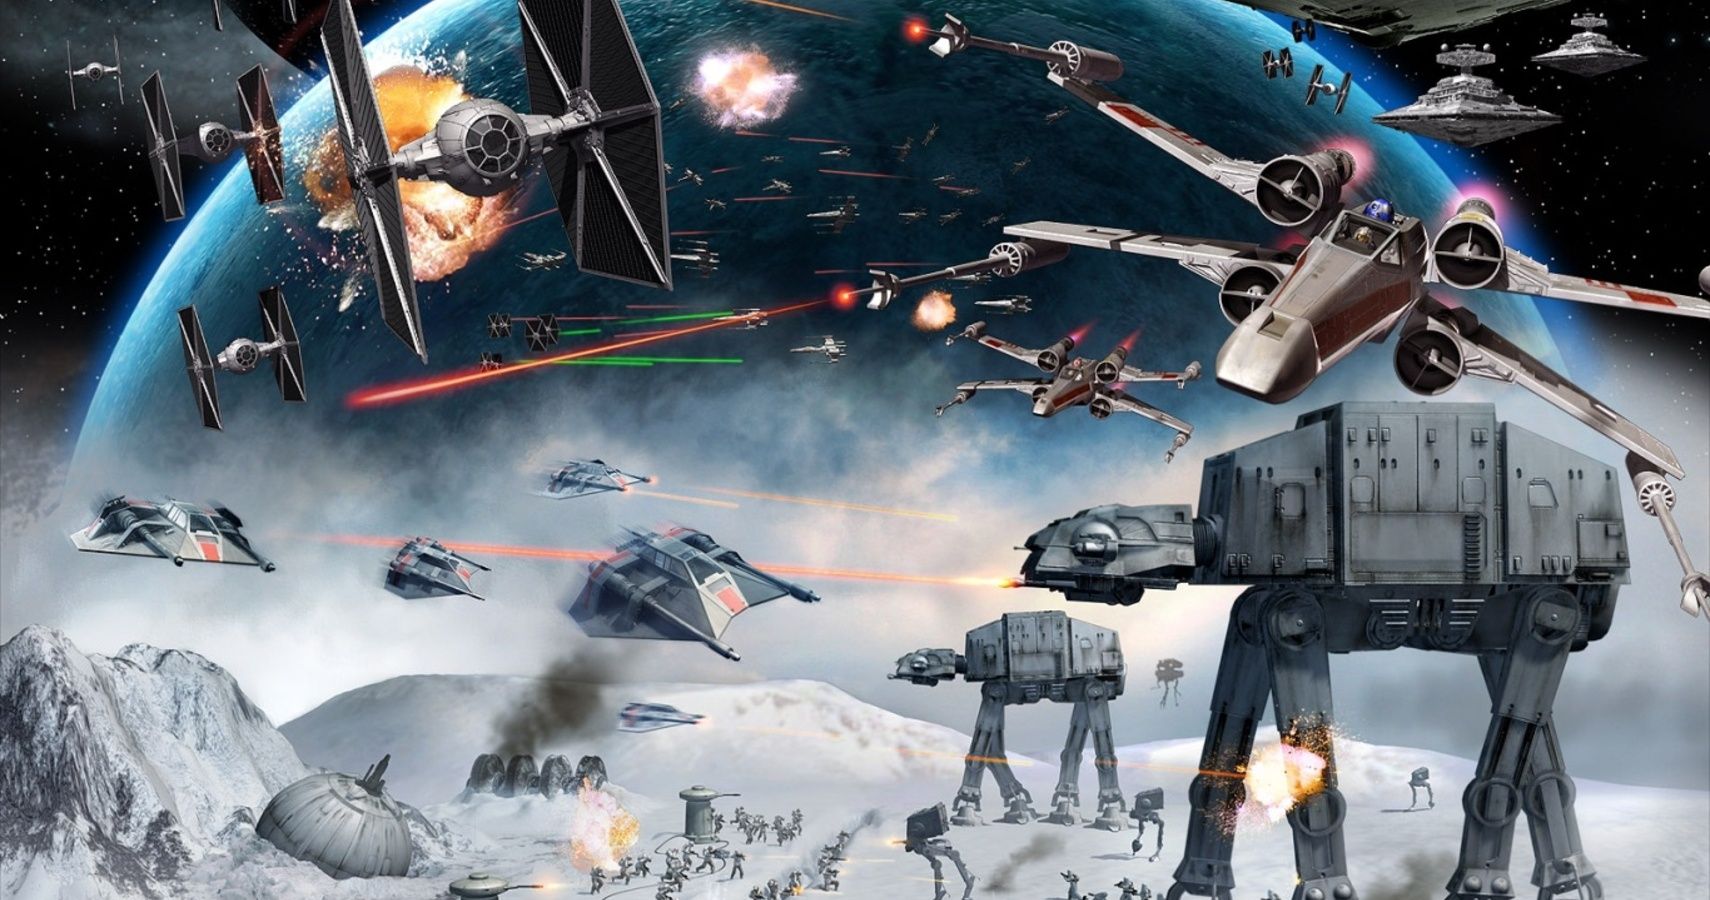 More pre-alpha gameplay of Star Wars: Battlefront 3 leaks 